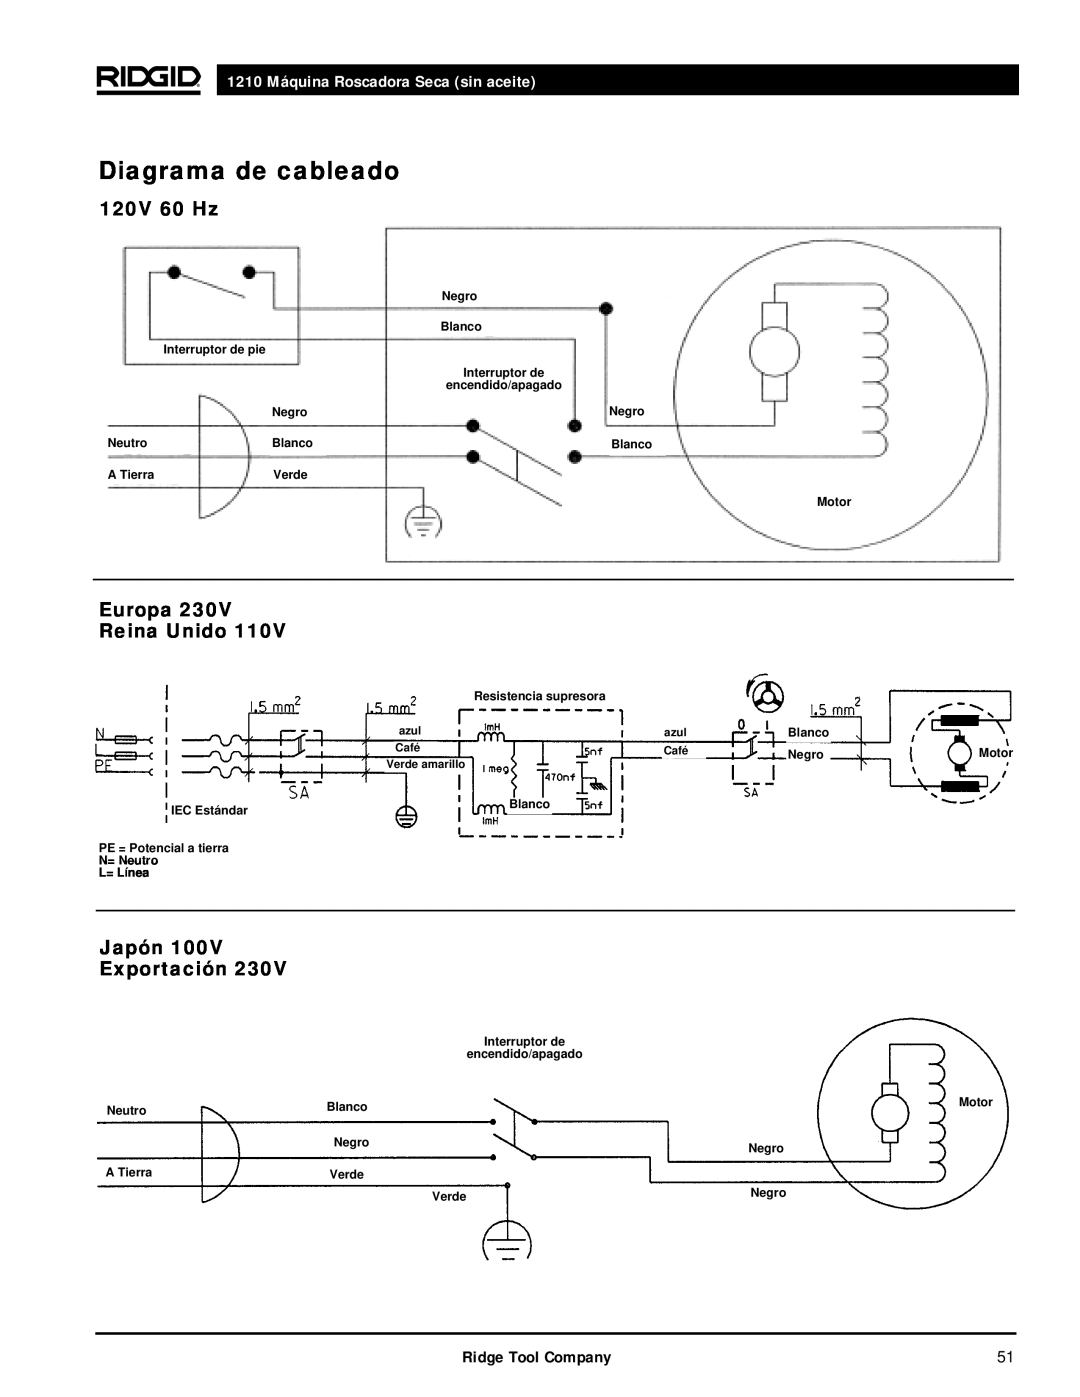 RIDGID 1210 manual Diagrama de cableado, Europa 230V Reina Unido, Japón Exportación, 120V 60 Hz 